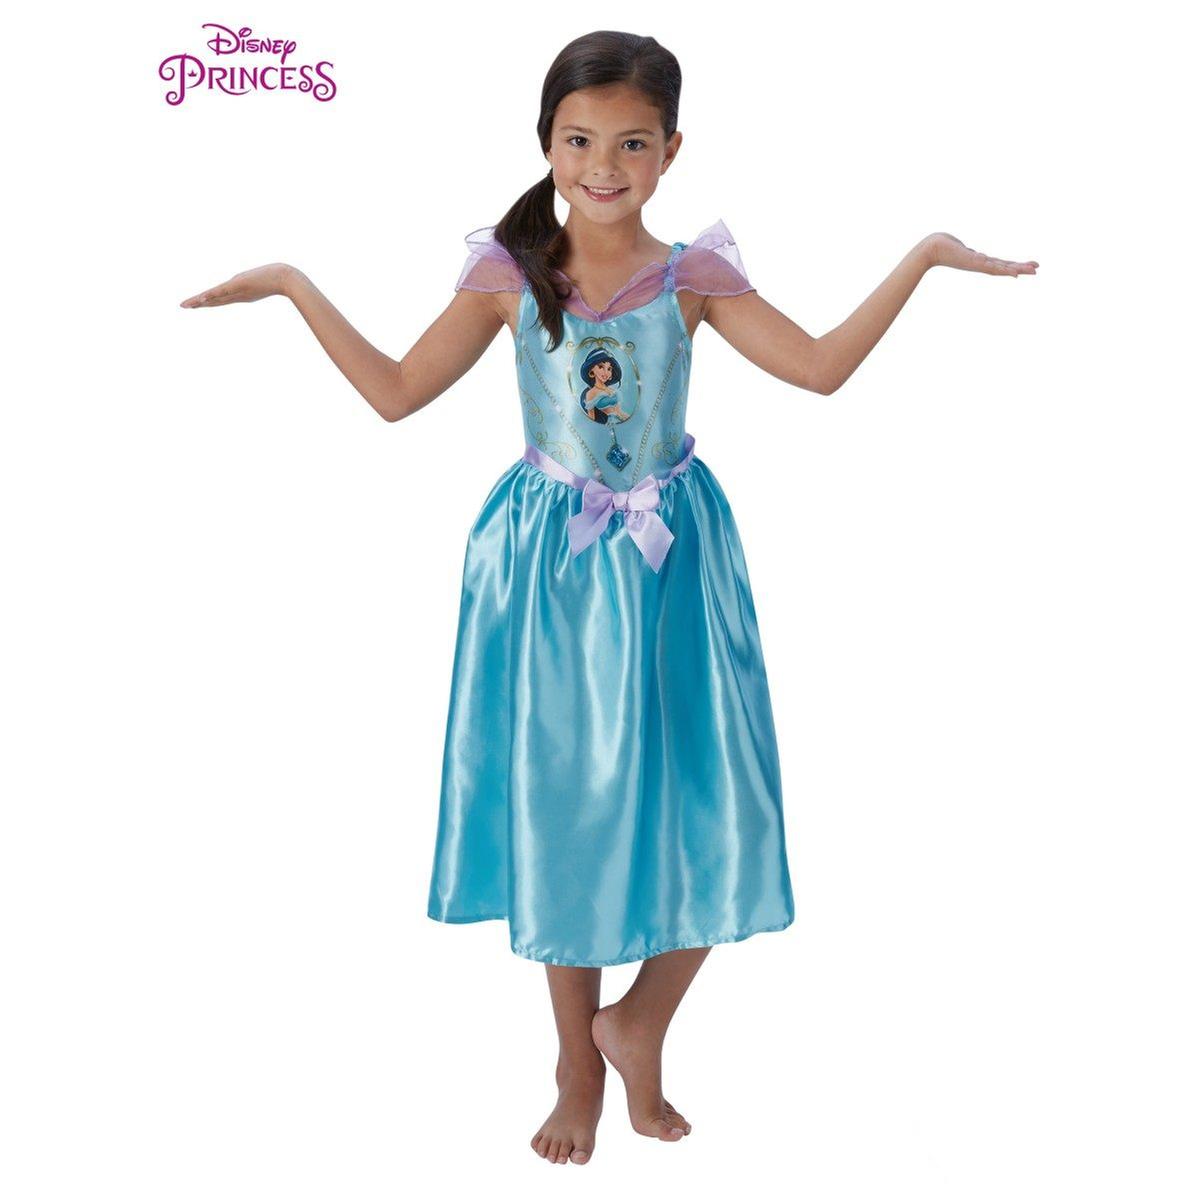 Princesas Disney - Jasmine - Disfraz infantil 7-8 años, Disney Princess  Dress Up